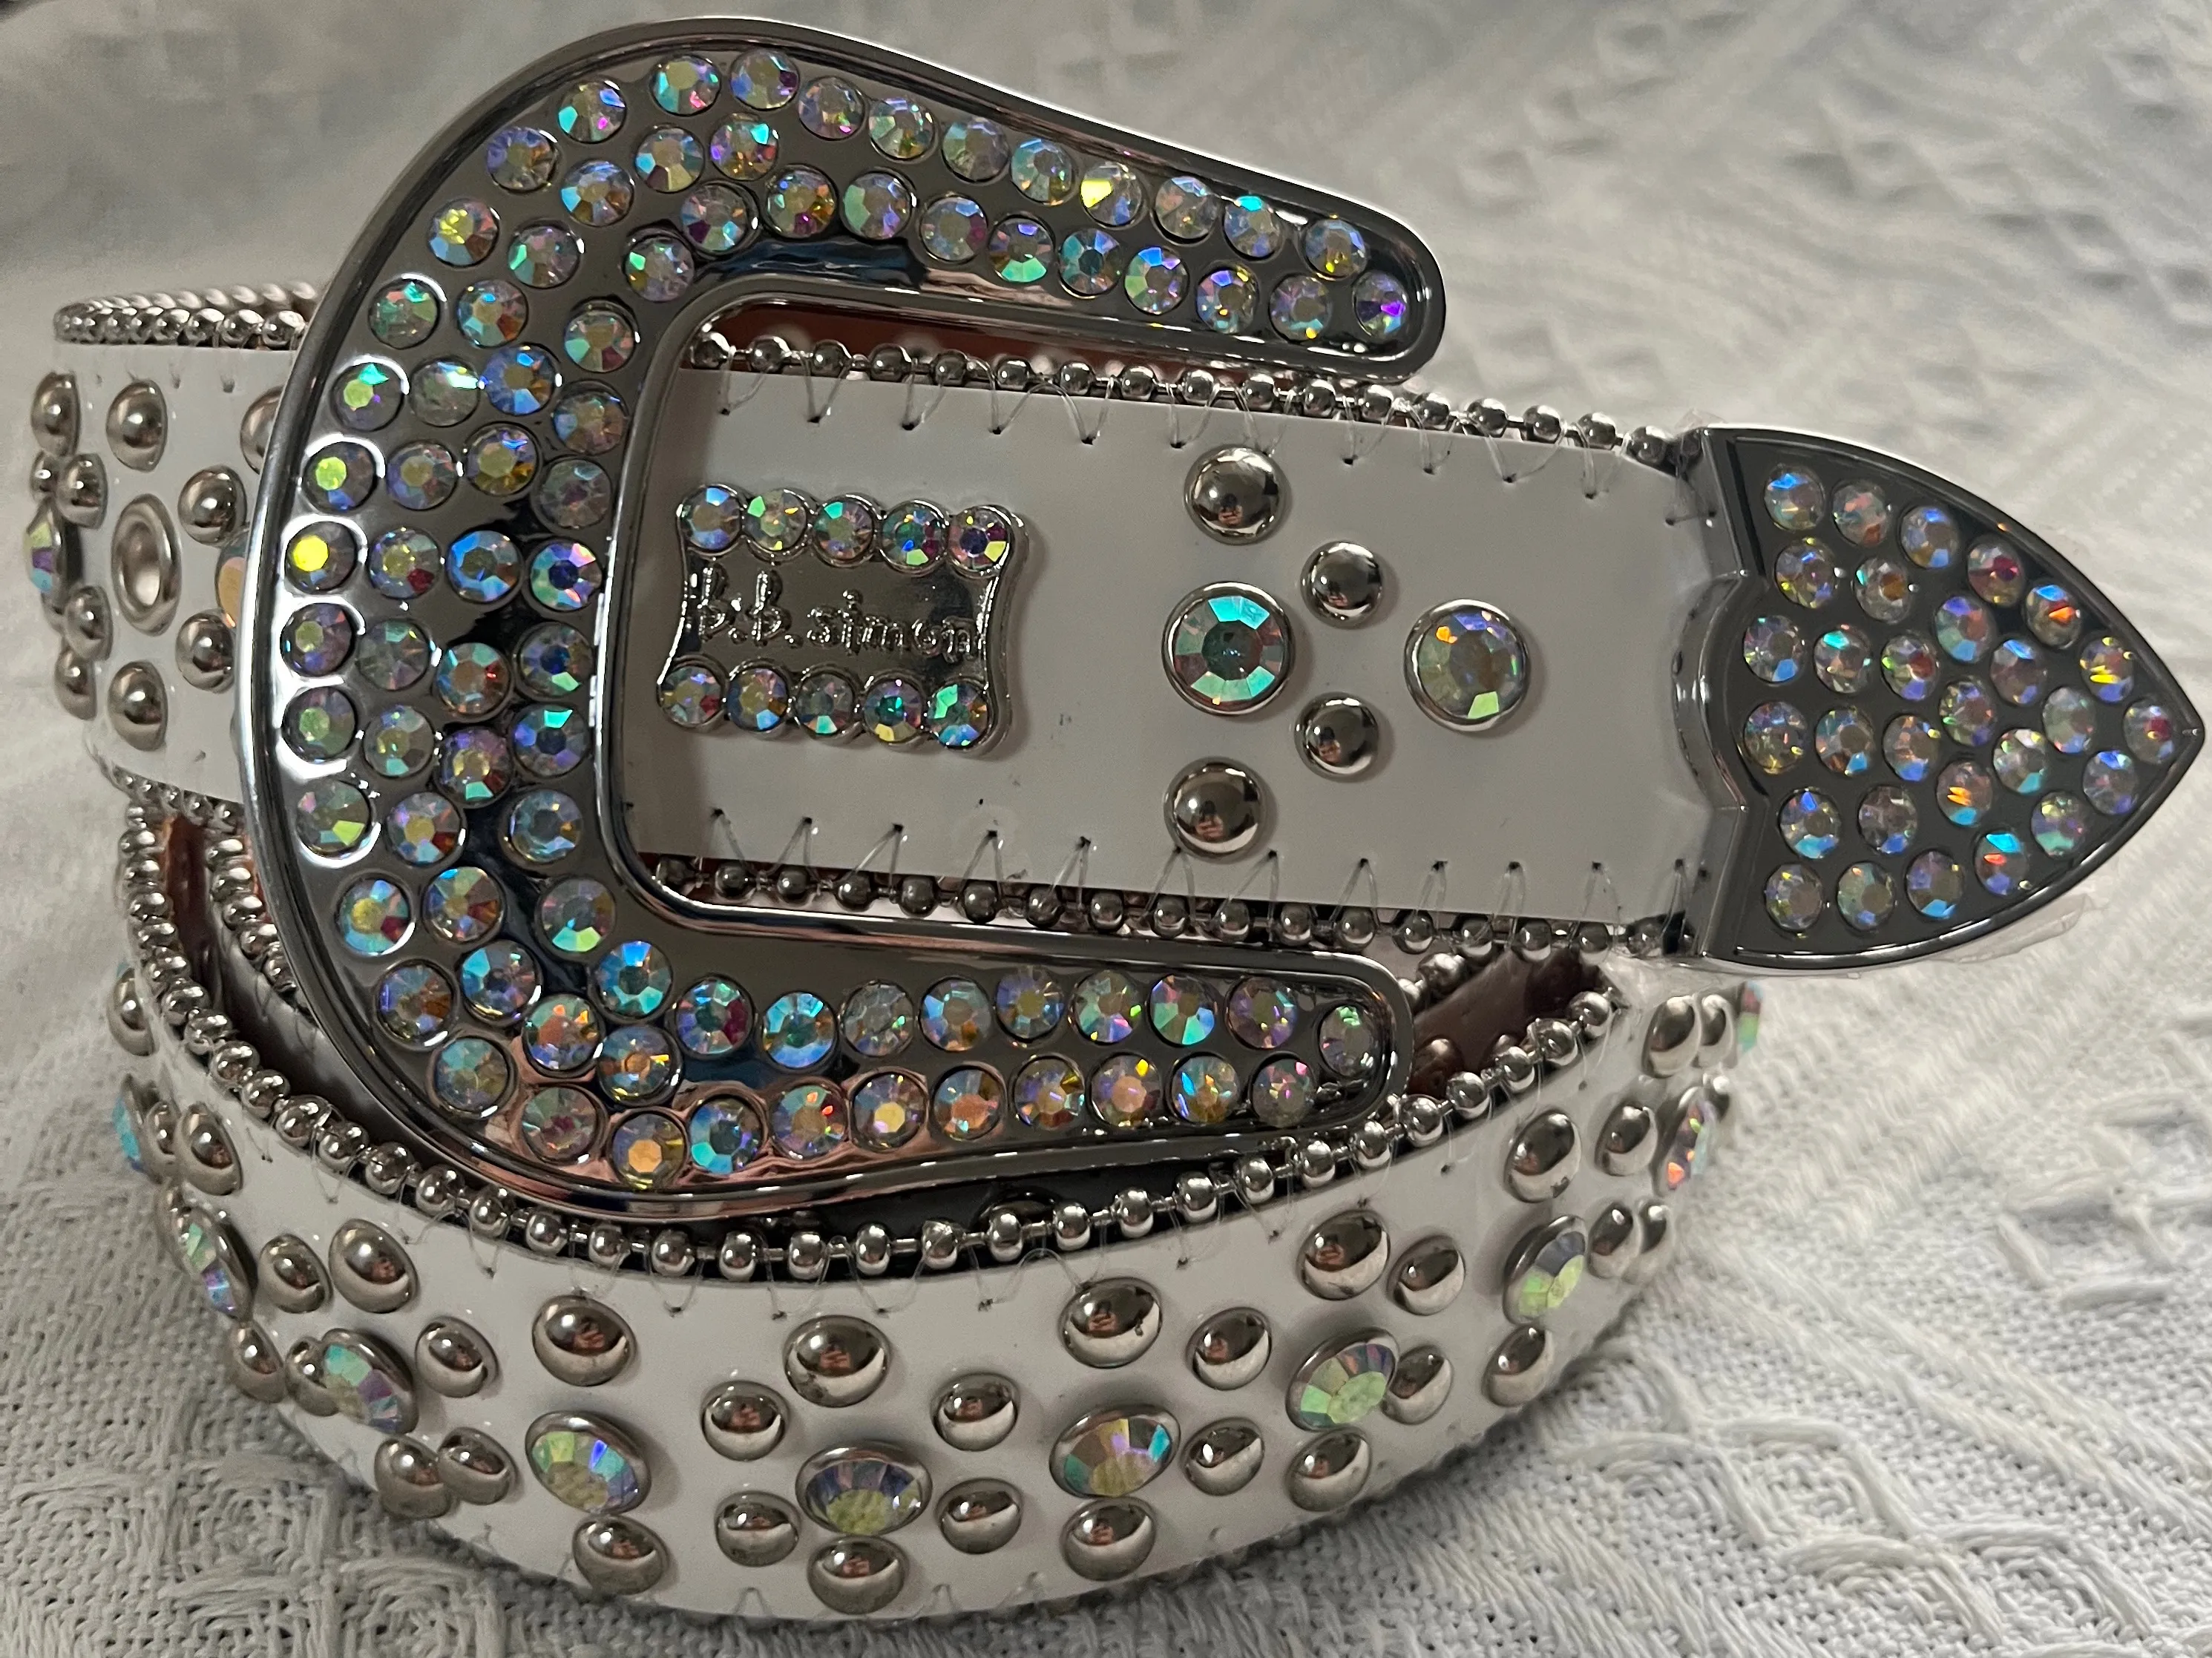 Designer ceinture bb ceinture bb simon ceinture ceintures de luxe mens ceinture diamant brillant noir sur noir bleu blanc multicolore avec strass bling comme cadeau